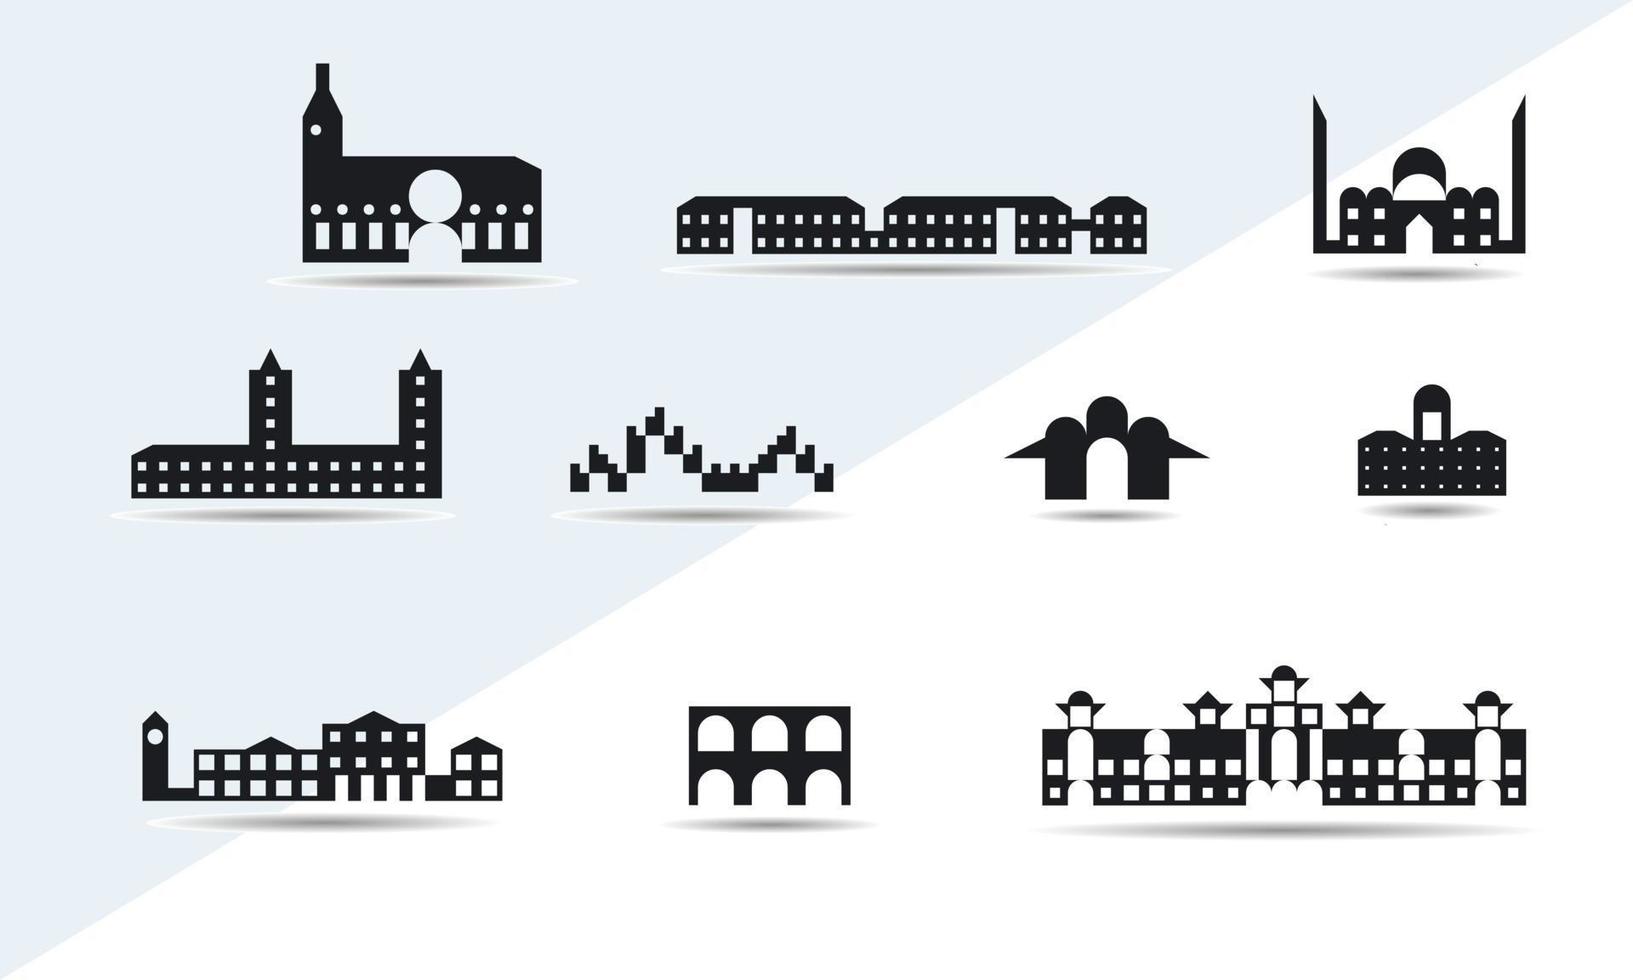 piccola città insieme di case e residenze su sfondo bianco, illustrazione del modello vettoriale